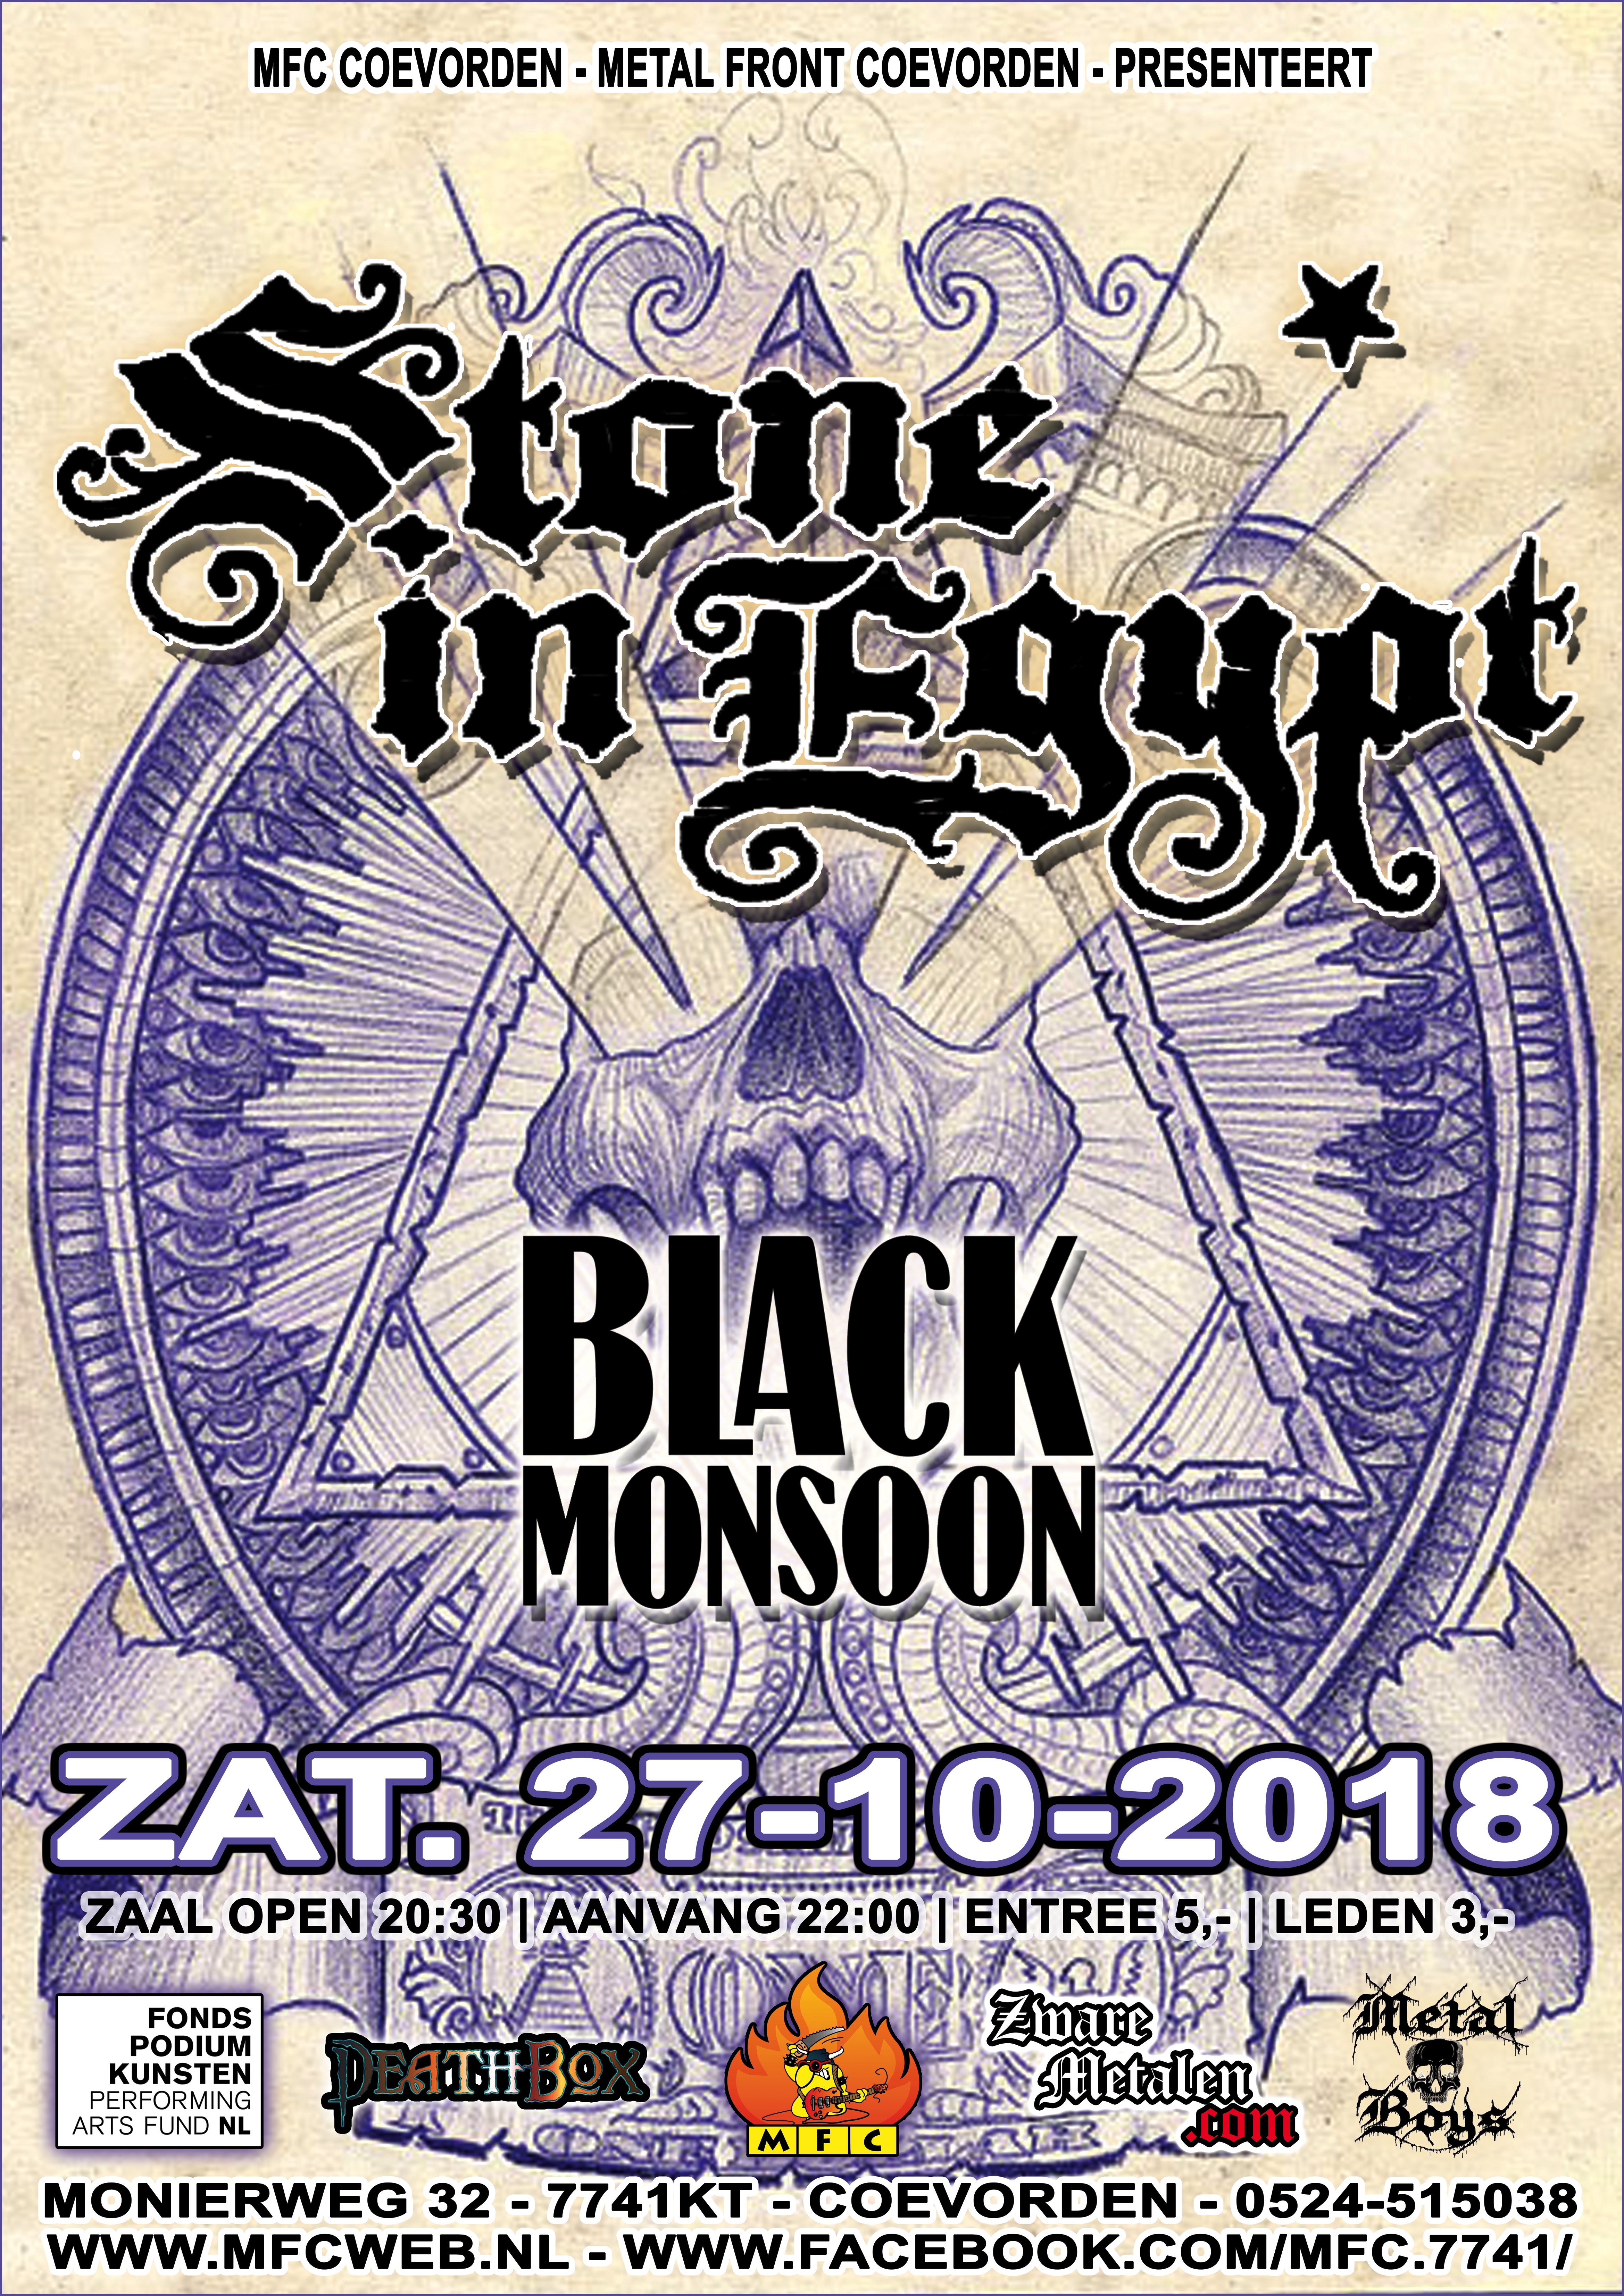 Concert: Stone in Egypt + Black Monsoon